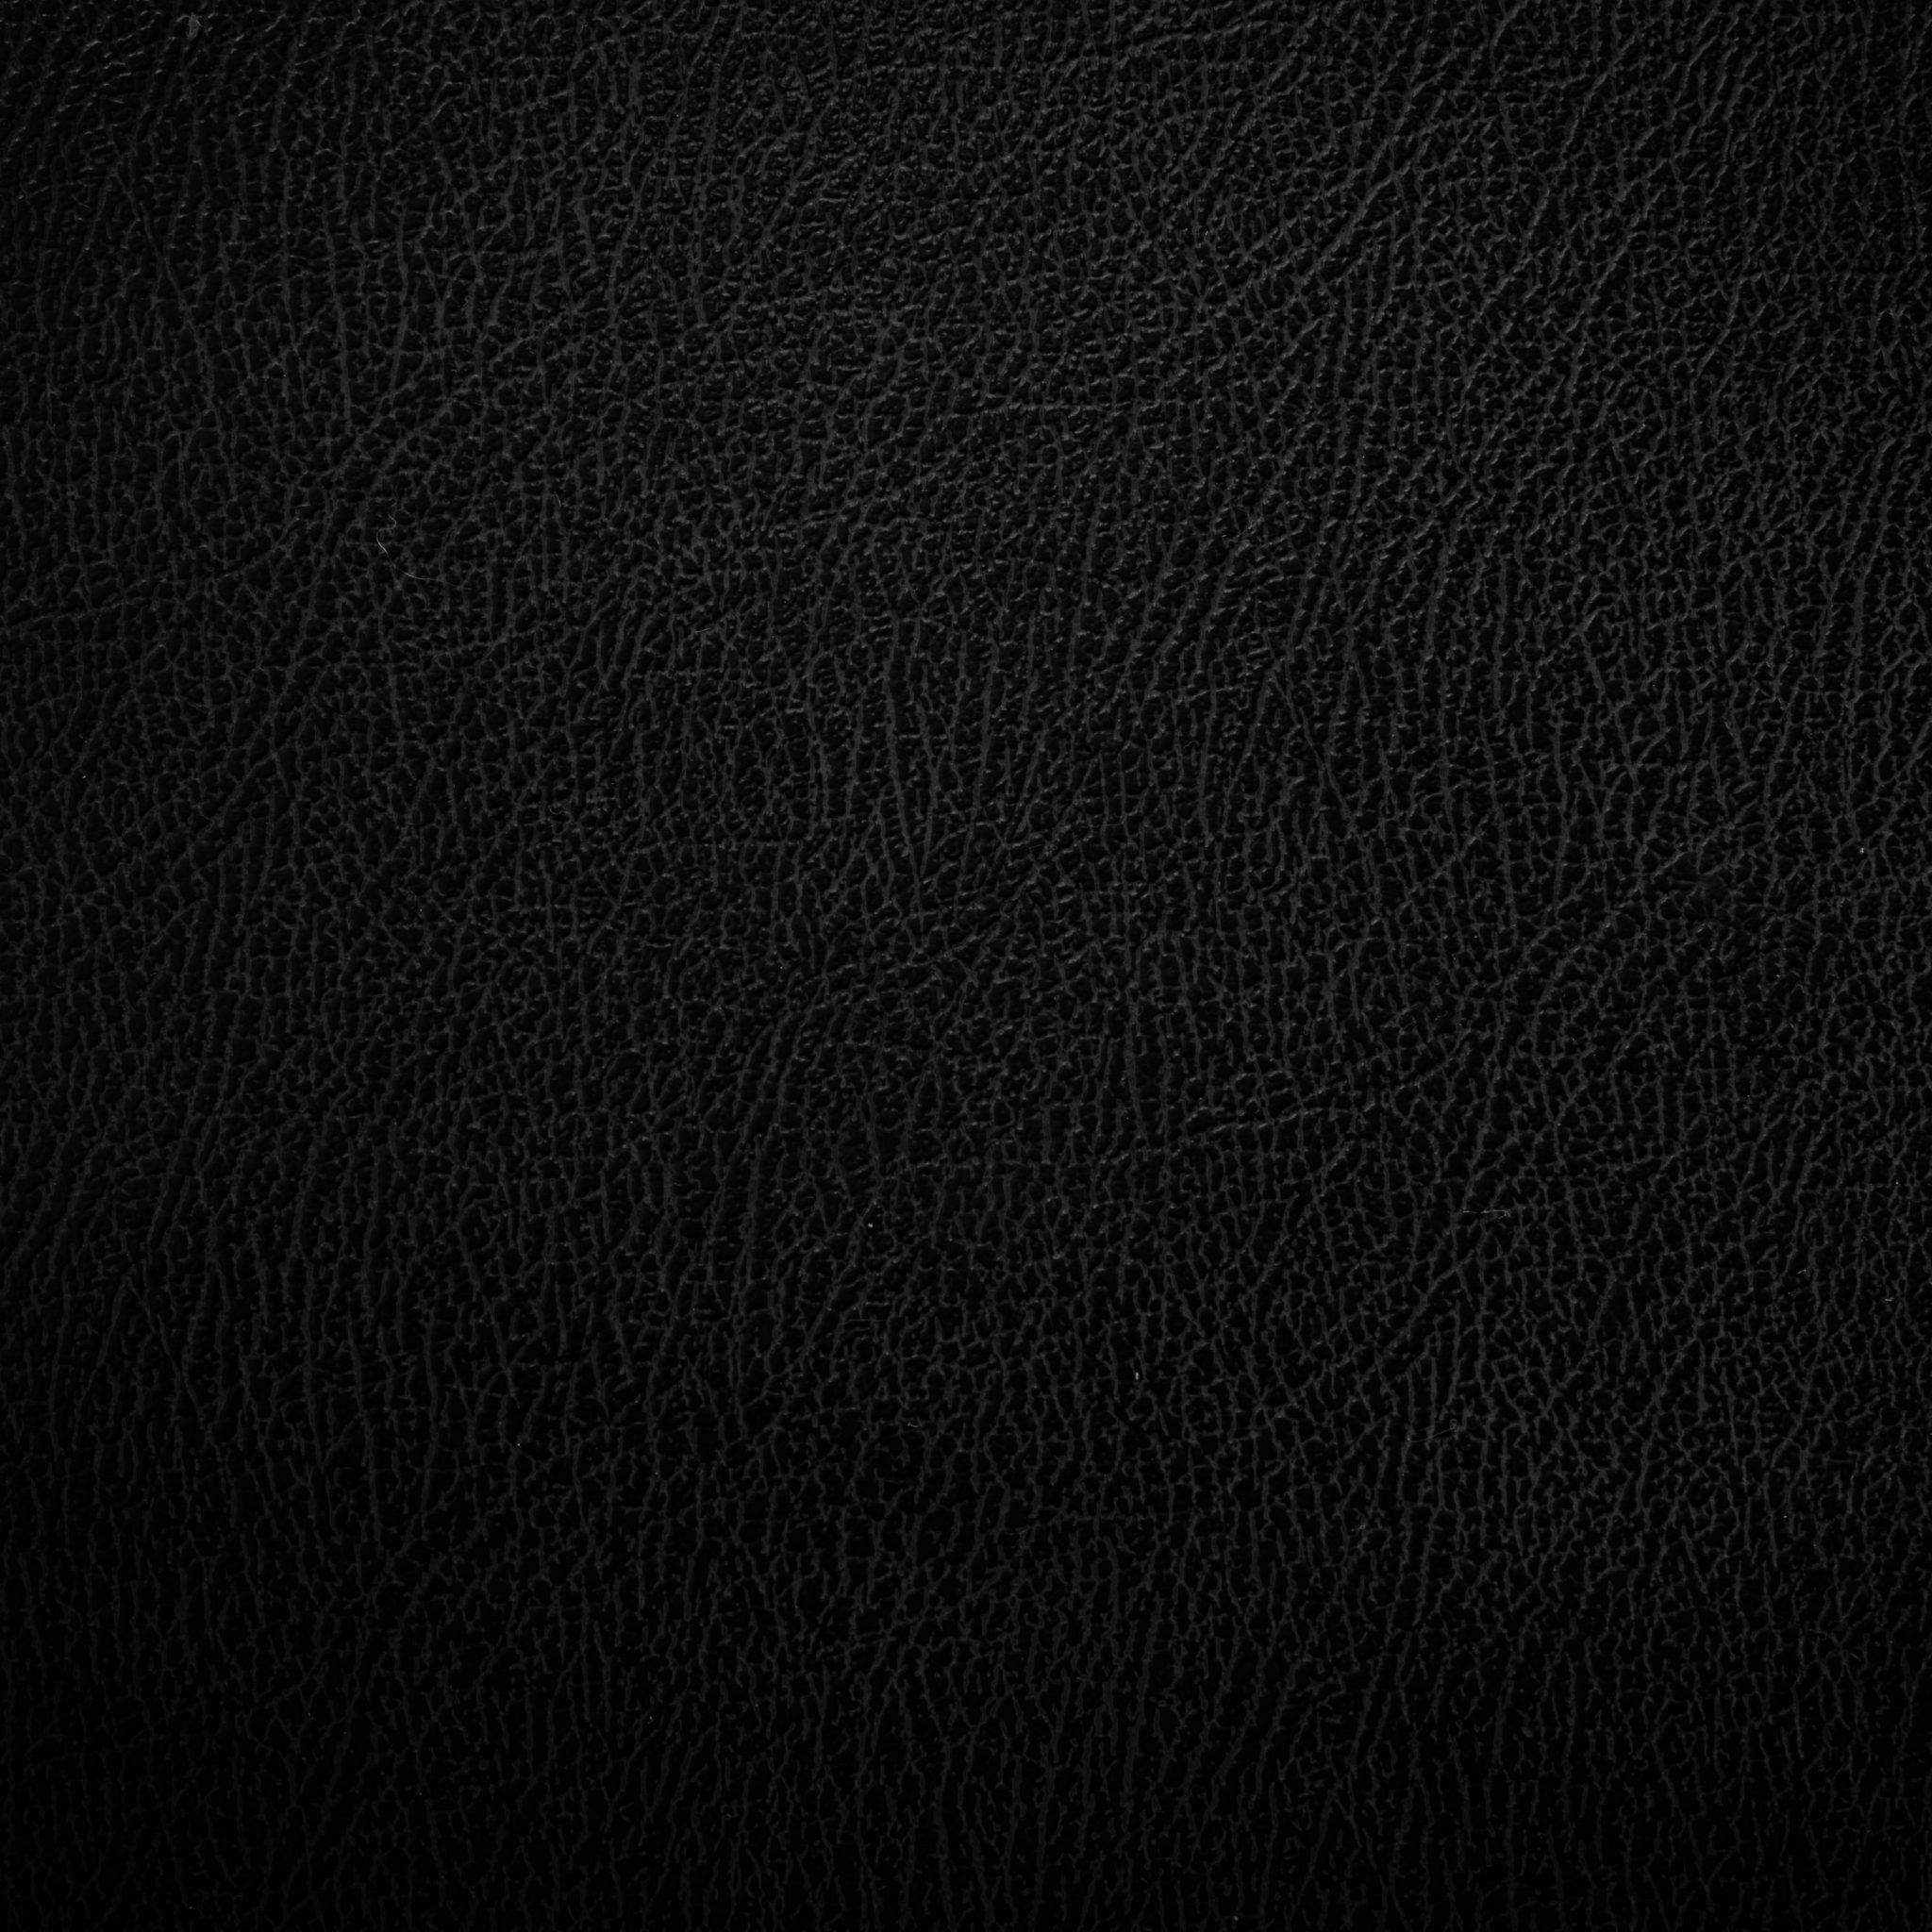 2048x2048 wallpapers iPad retina Black Leather Texture iPad Wallpaper 2048x2048 pixels resolution